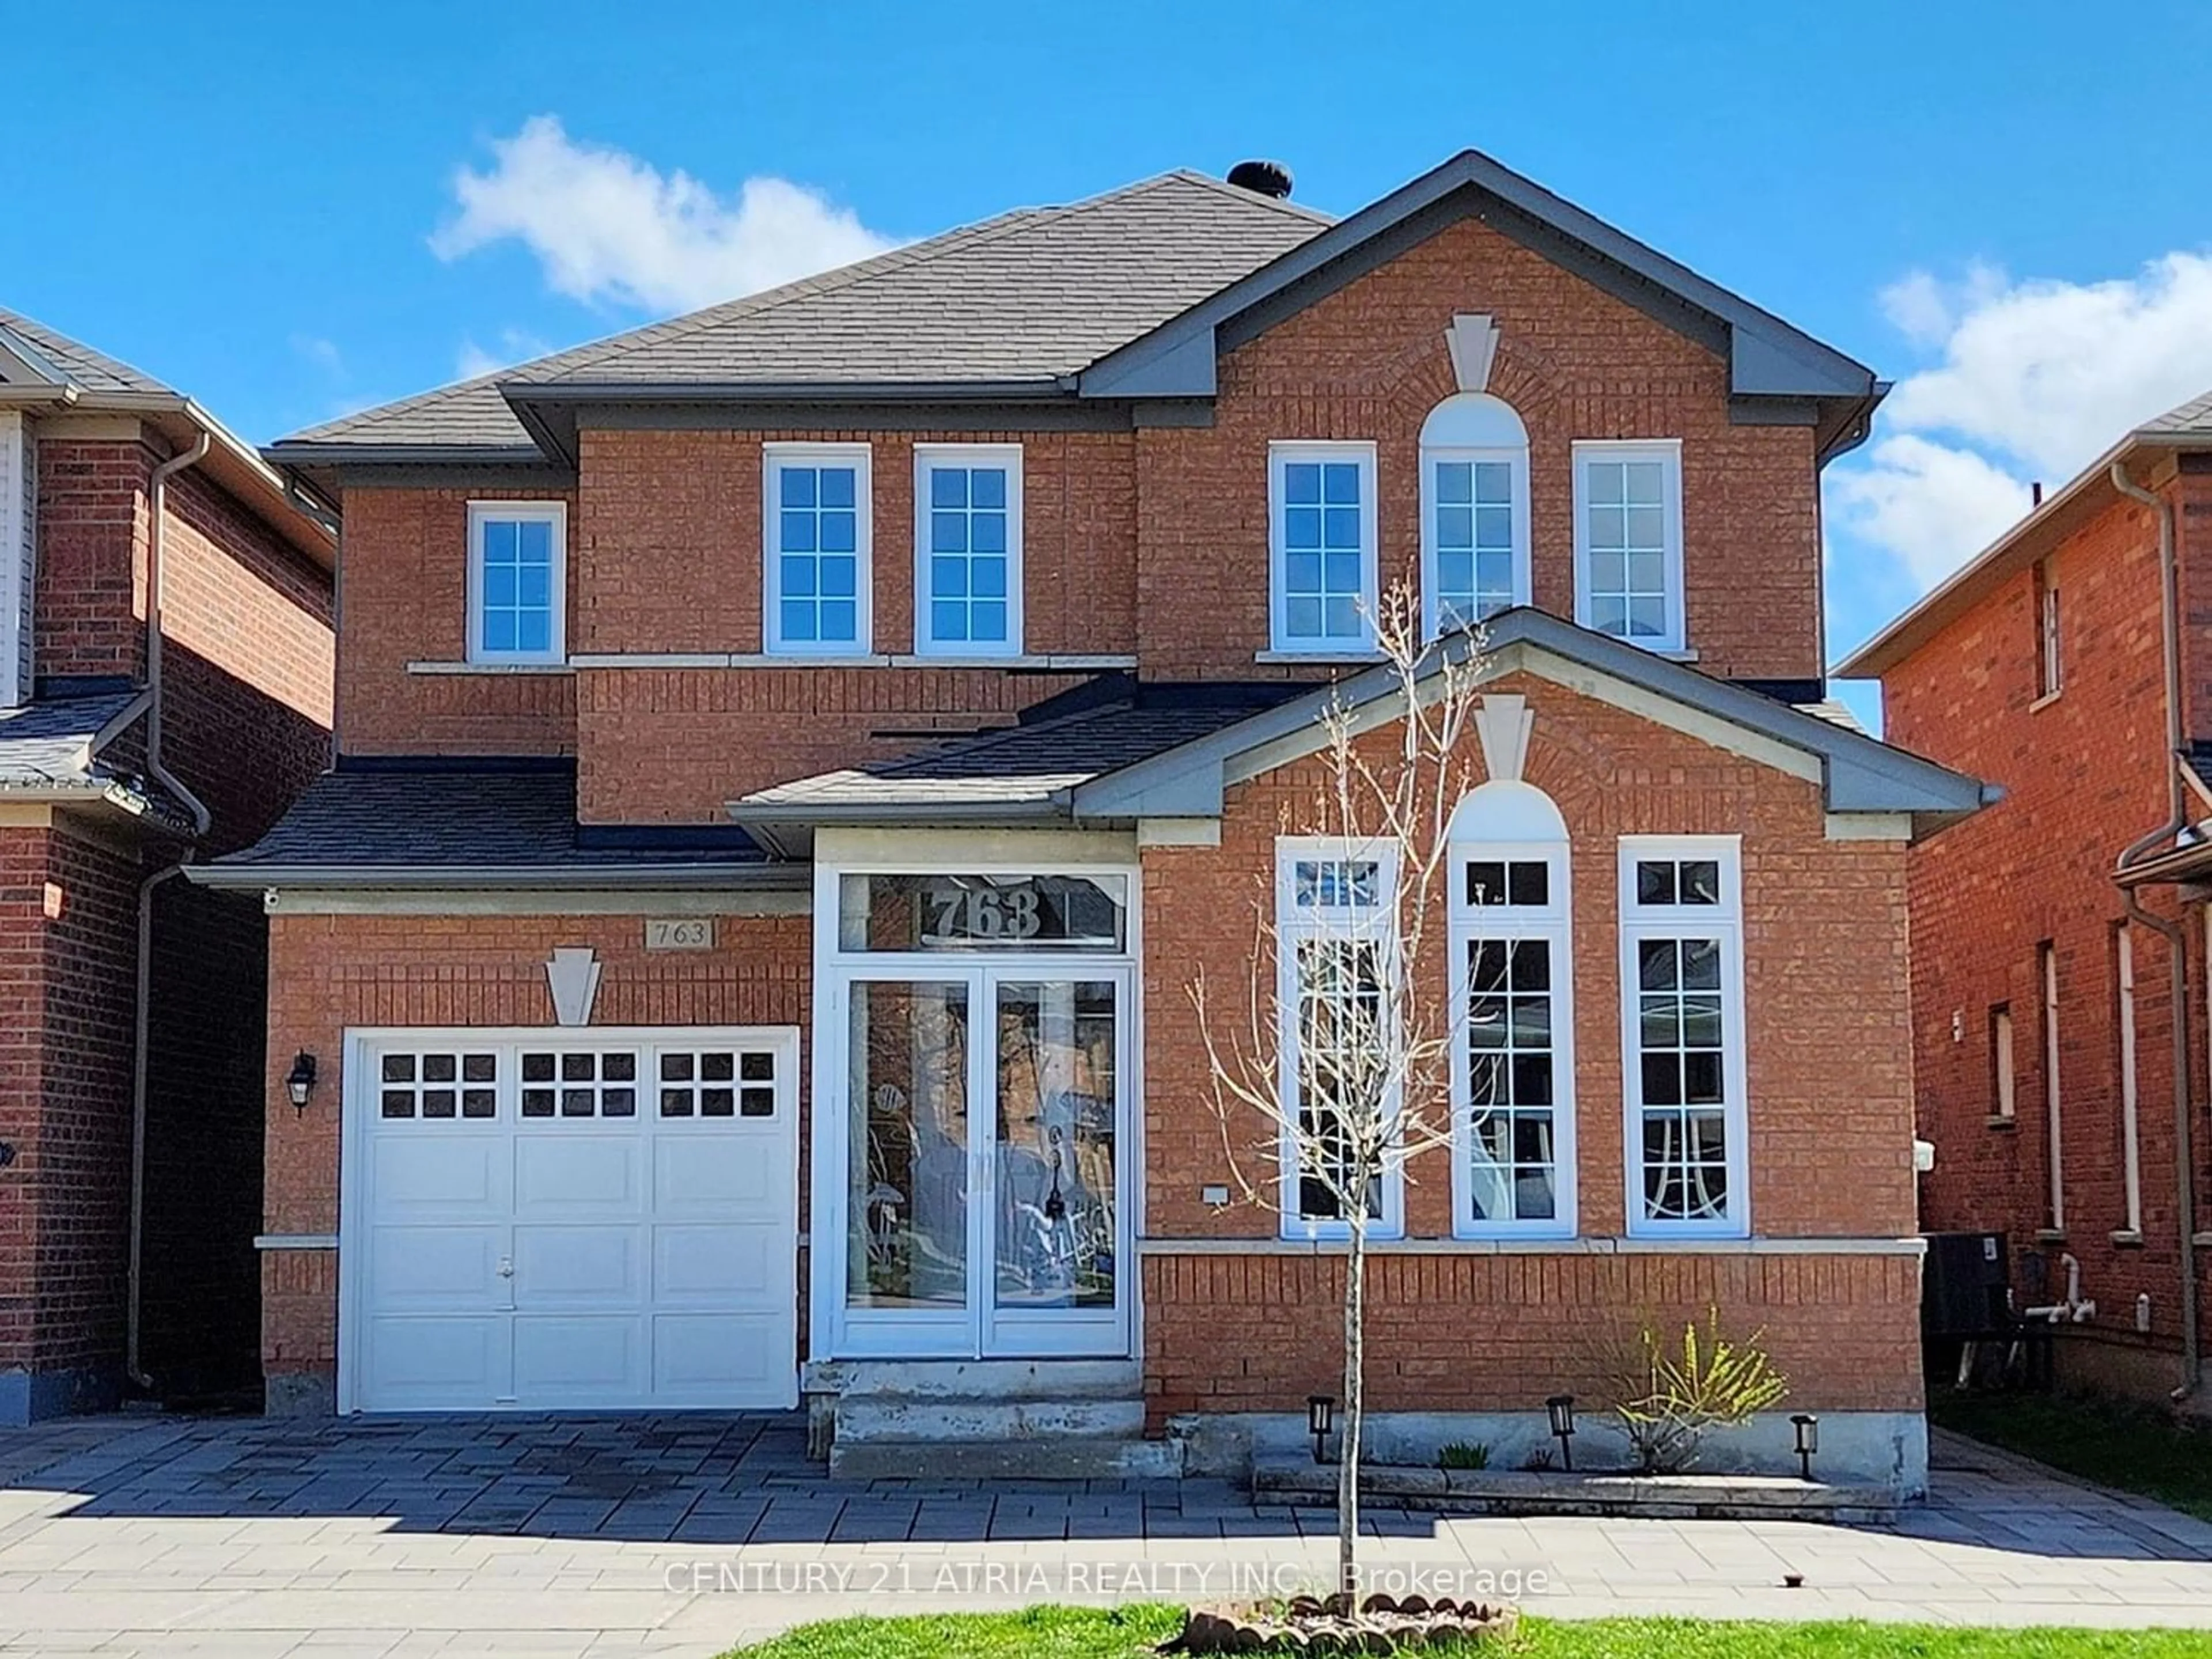 Home with brick exterior material for 763 Castlemore Ave, Markham Ontario L6E 1P7